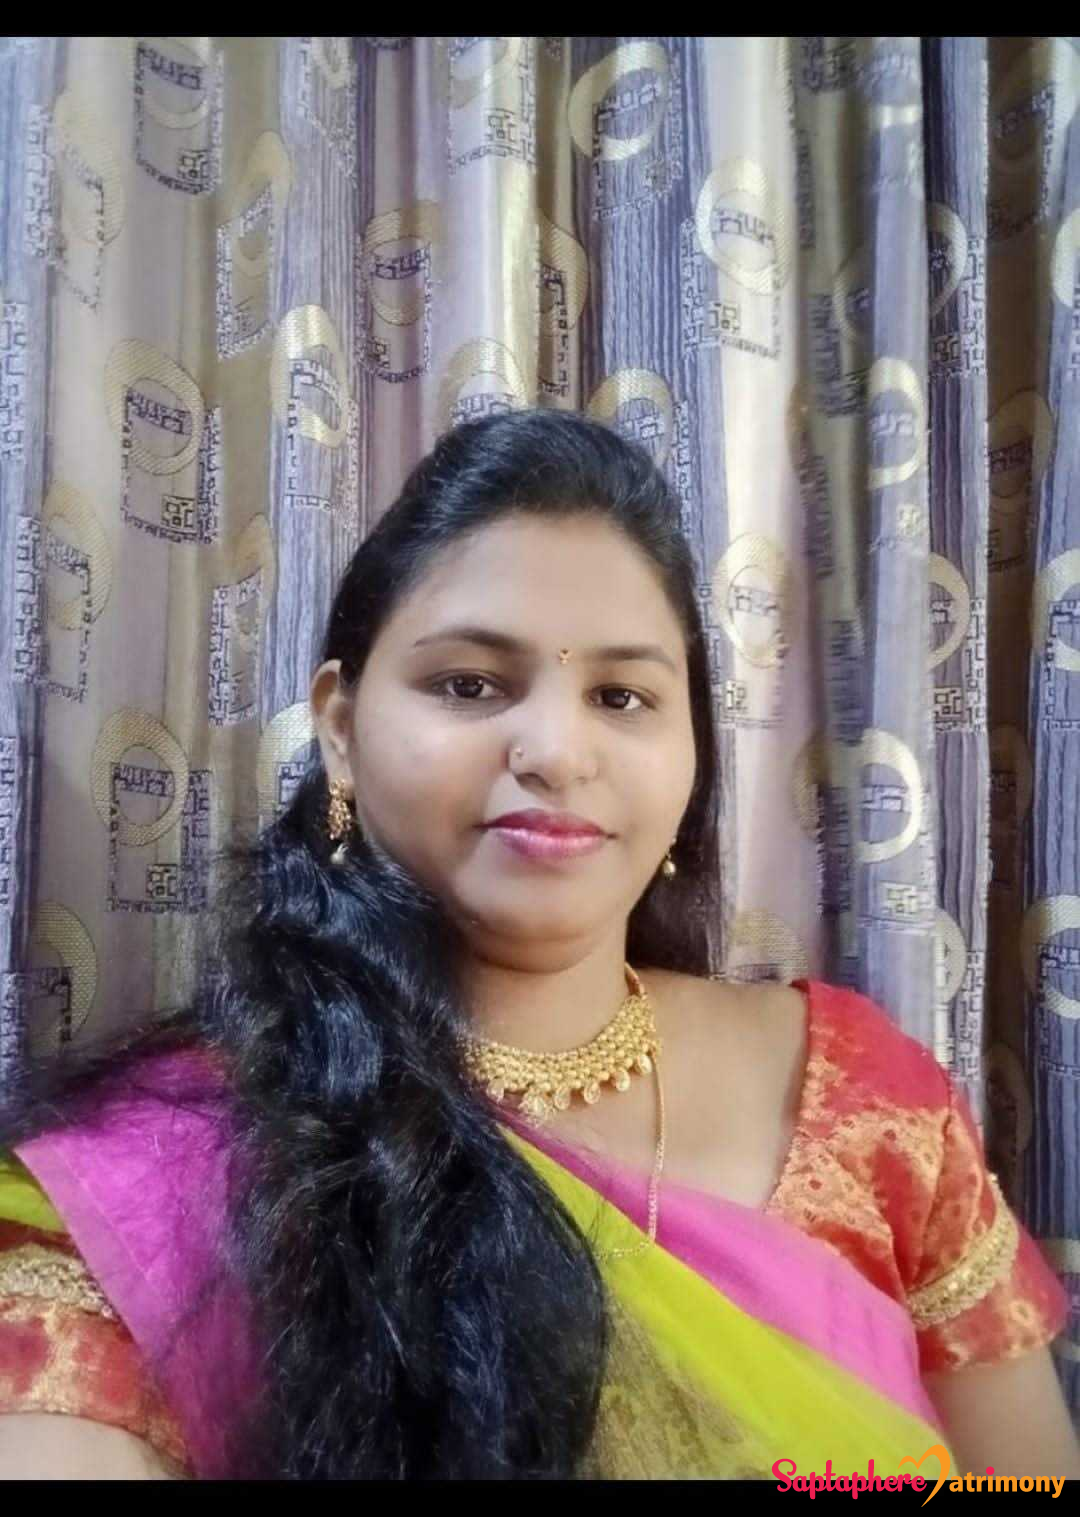 Jyoti